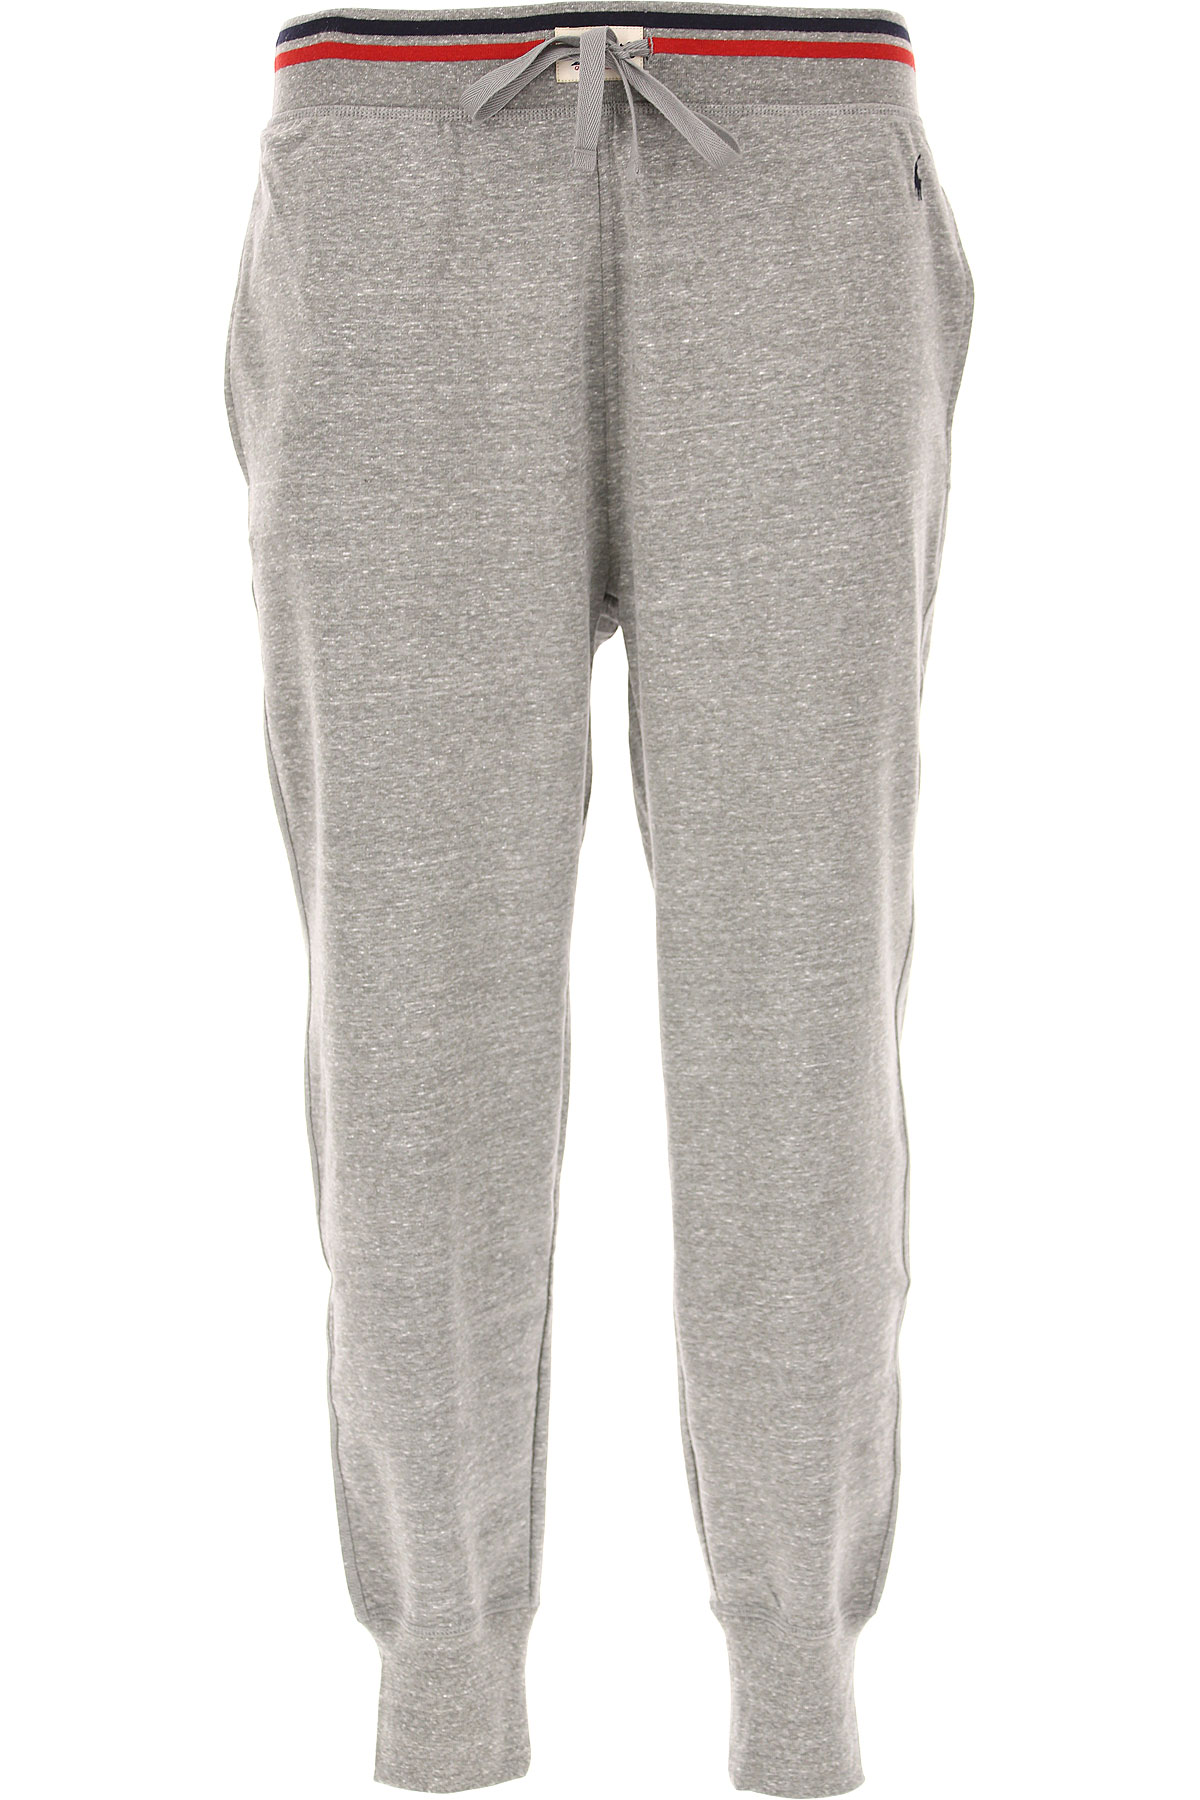 Ralph Lauren Pantalon Homme, Bruyère grise, Polyester, 2017, L L M M XL